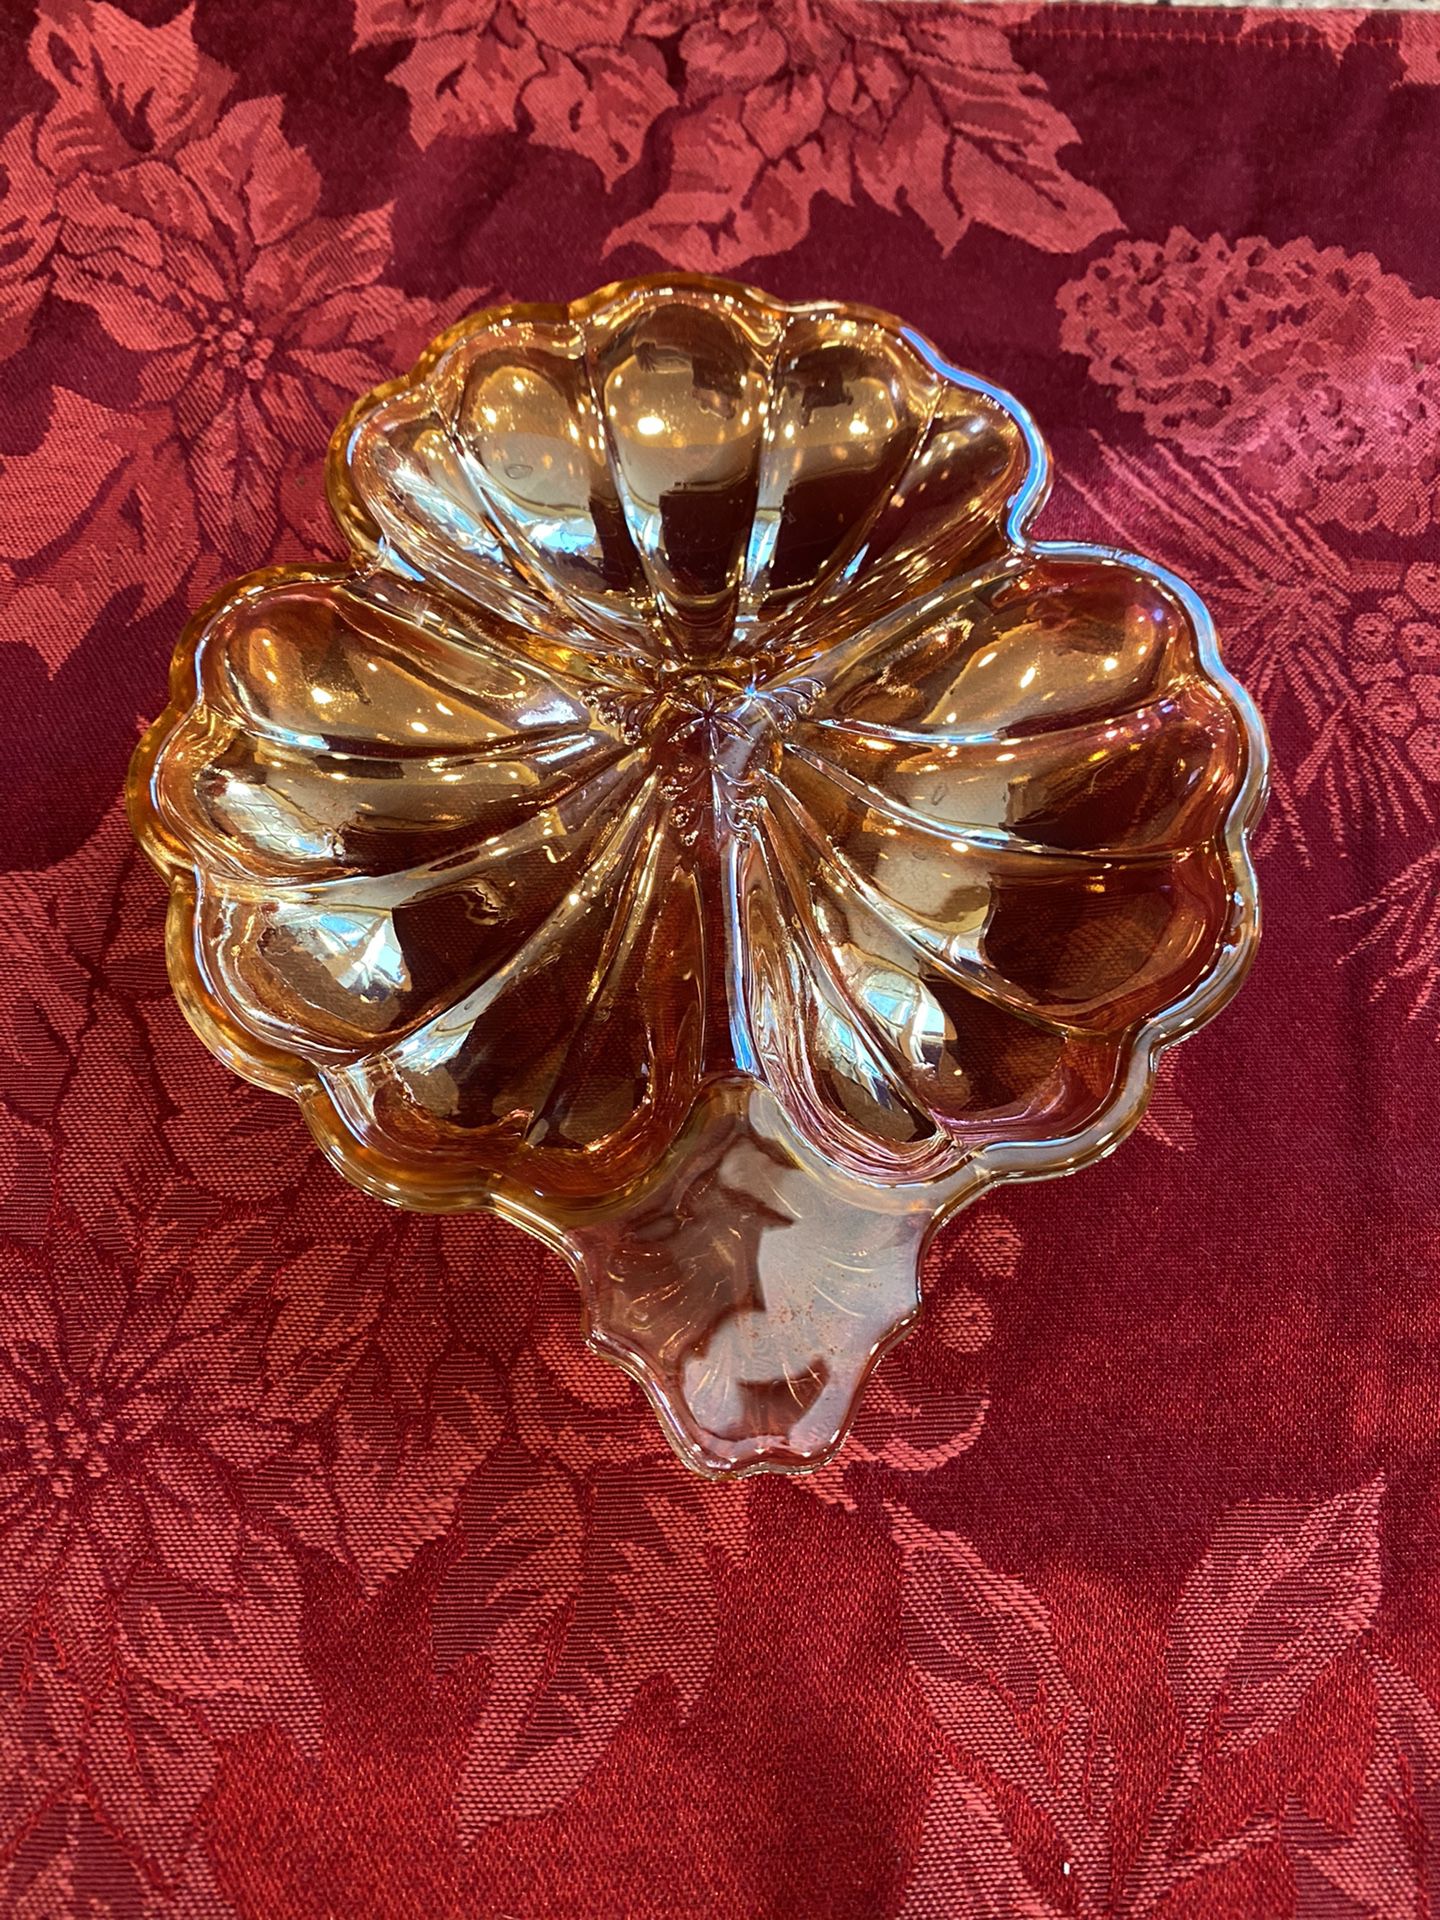 Carnival glass vintage serving plate antique original